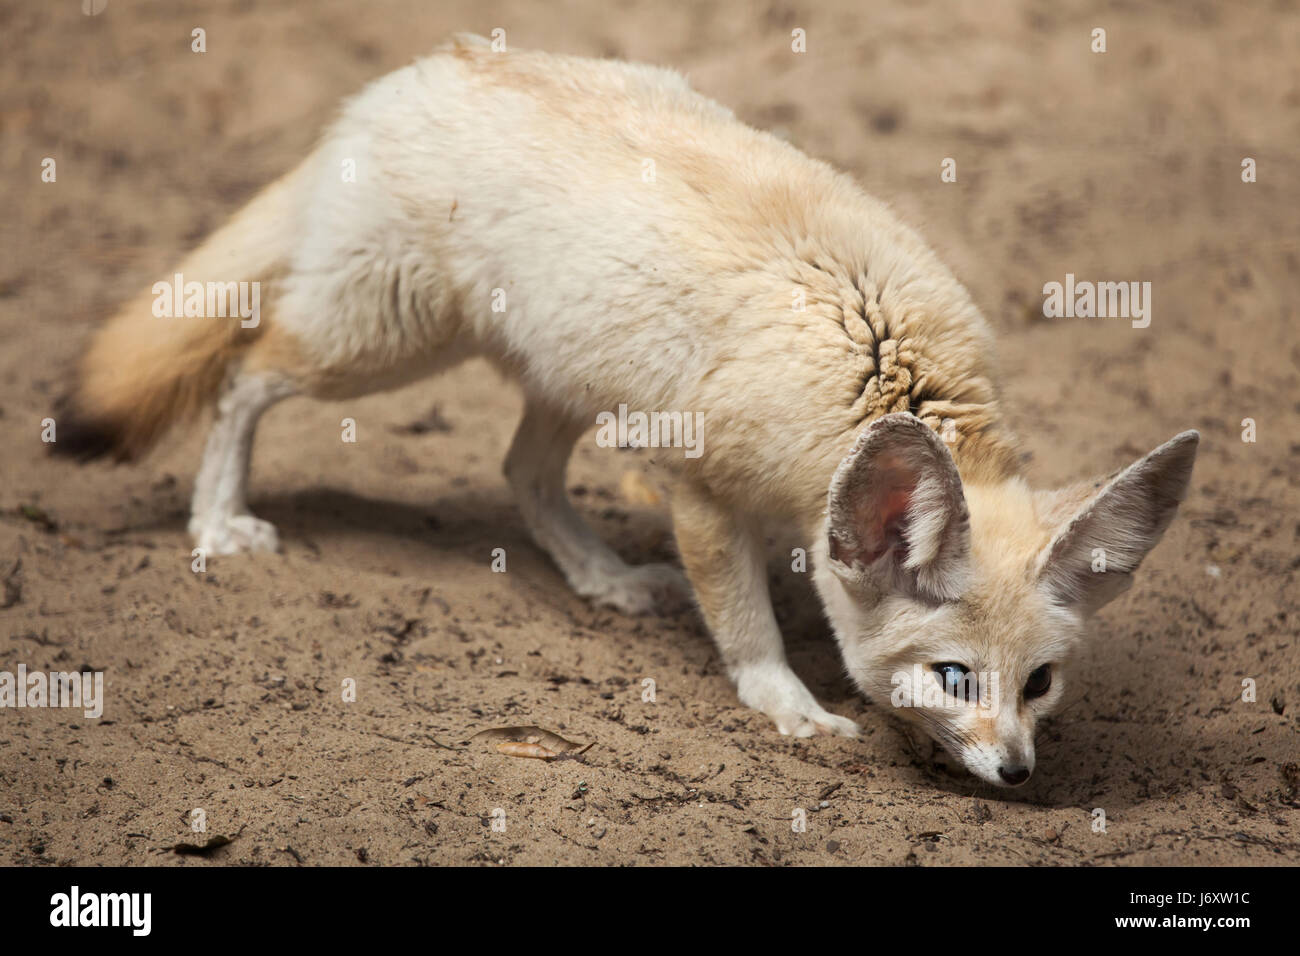 Fennec fox (Vulpes zerda). Wildlife animal. Stock Photo